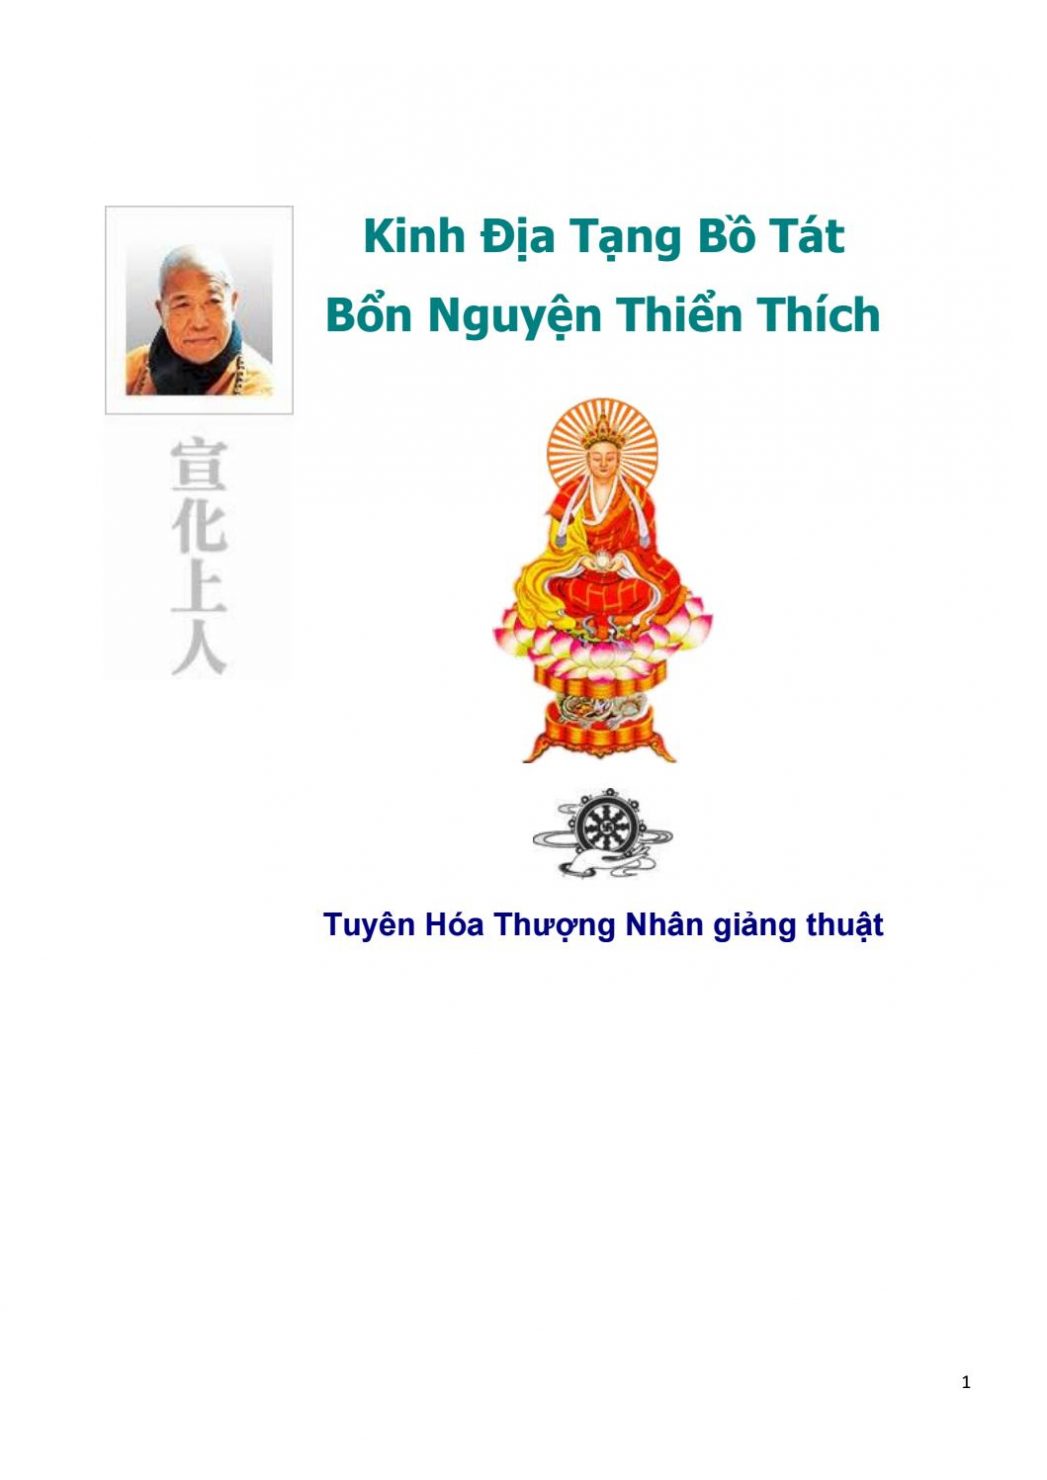 Kinh Ðịa Tạng Bồ Tát Bổn Nguyện Thiển Thích